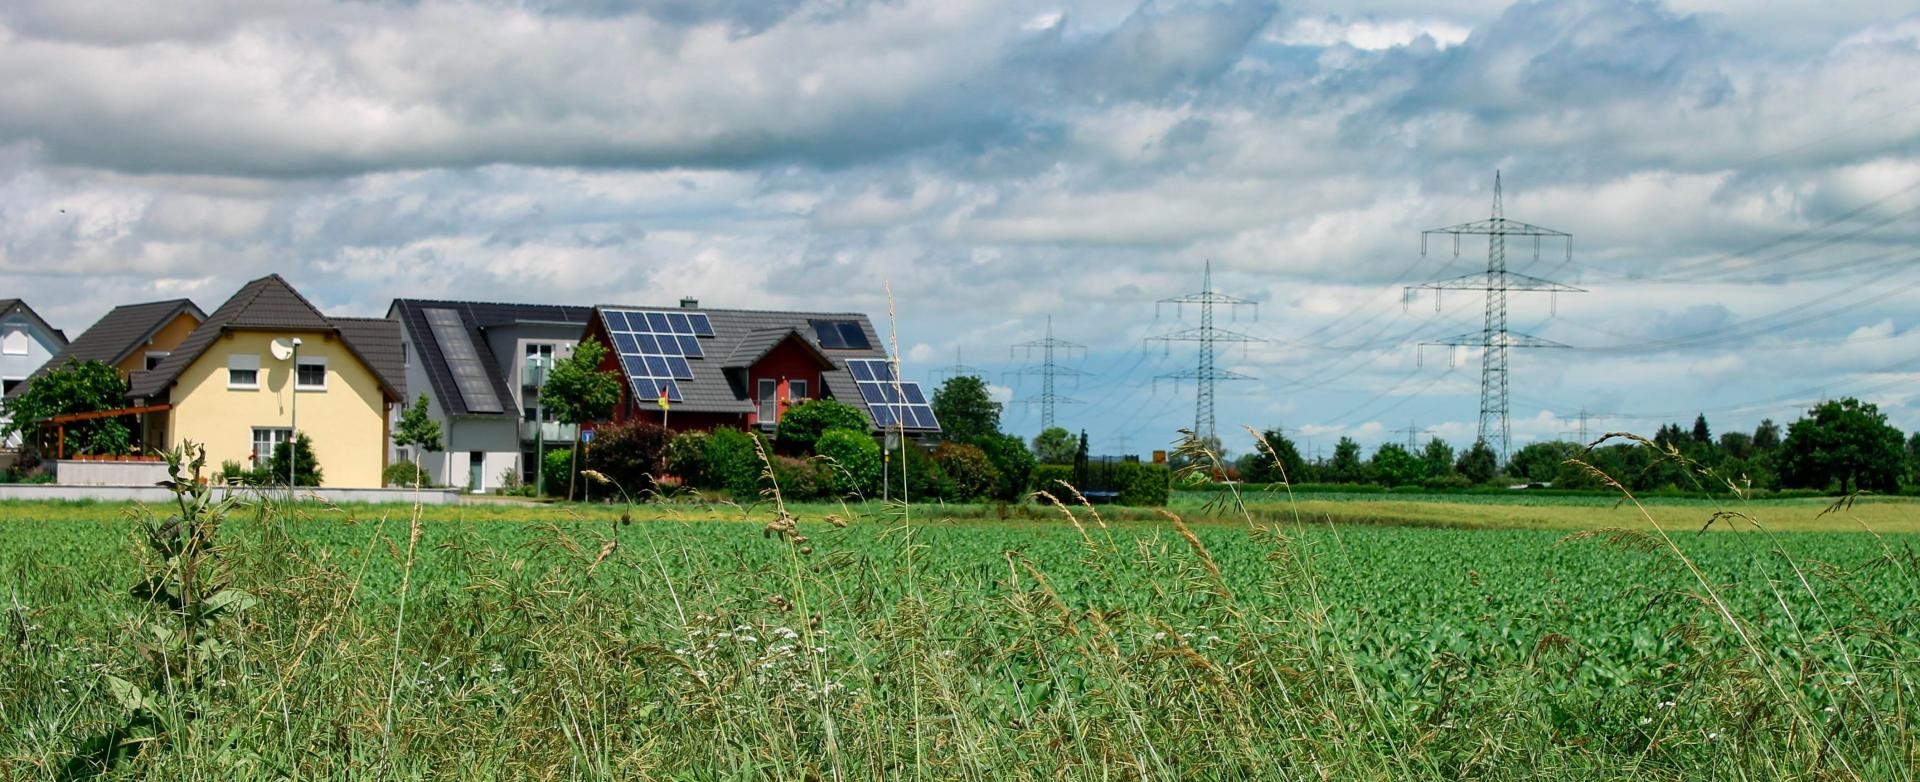 Blick auf Häuser mit Photovoltaikanlagen auf dem Dach, rechts daneben wogen Gräser, im Hintergrund Strommasten